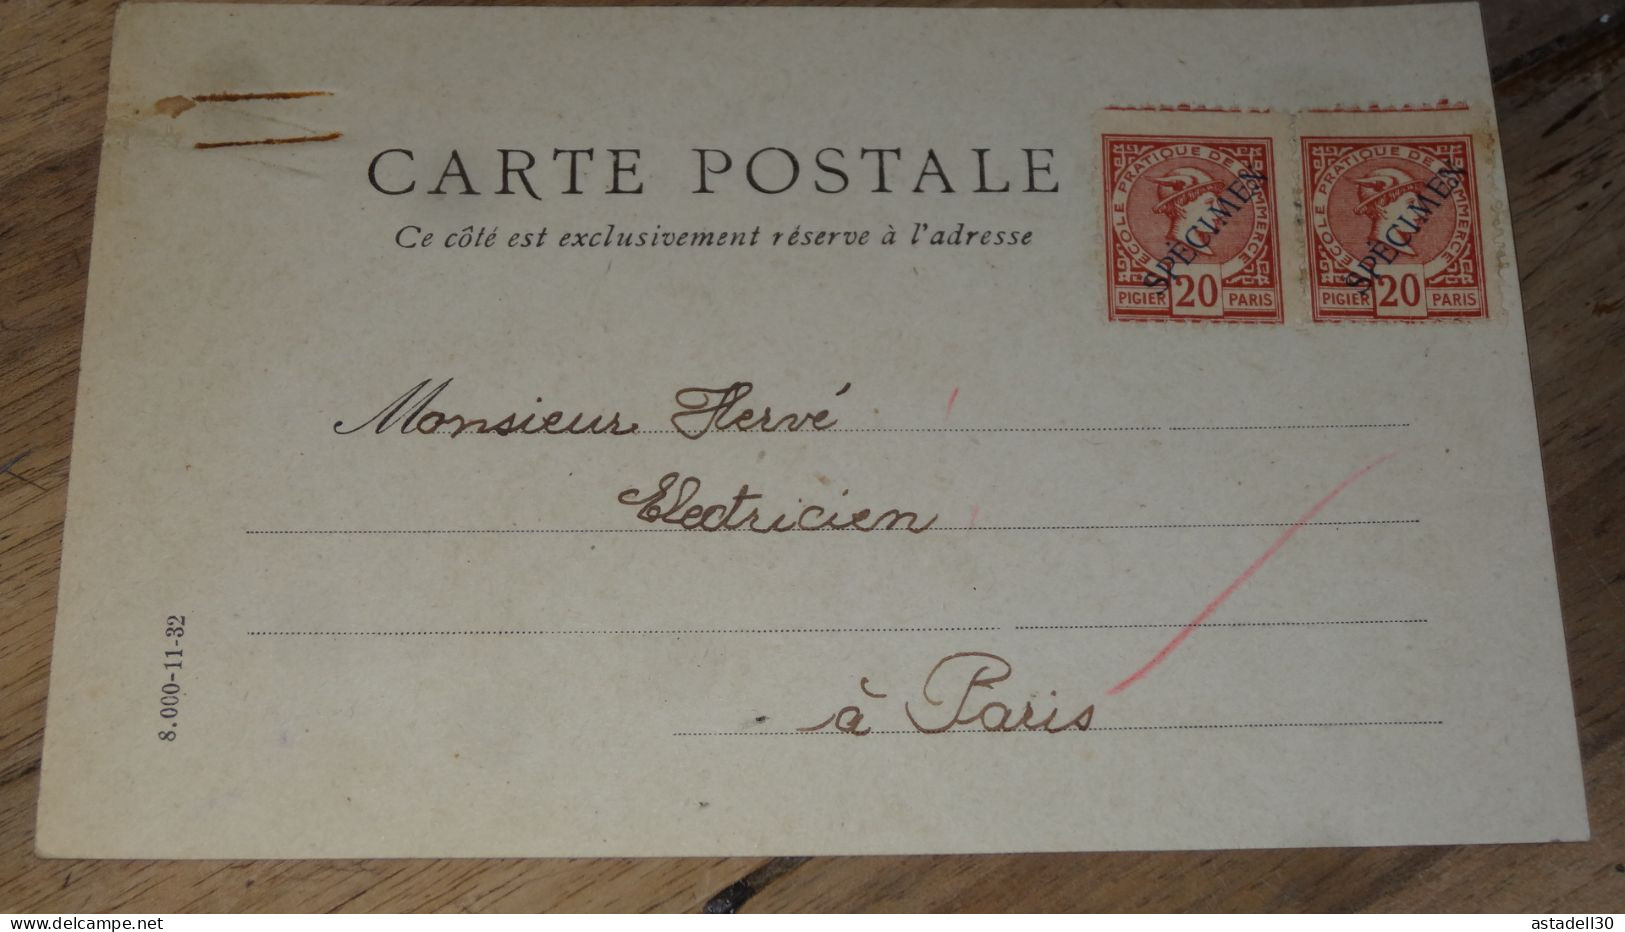 Carte Postale Fictif, Specimen, Ecole Commerce, Paire De 20c - 1934 ......... ..... 240424 ....... CL-12-10 - Phantom